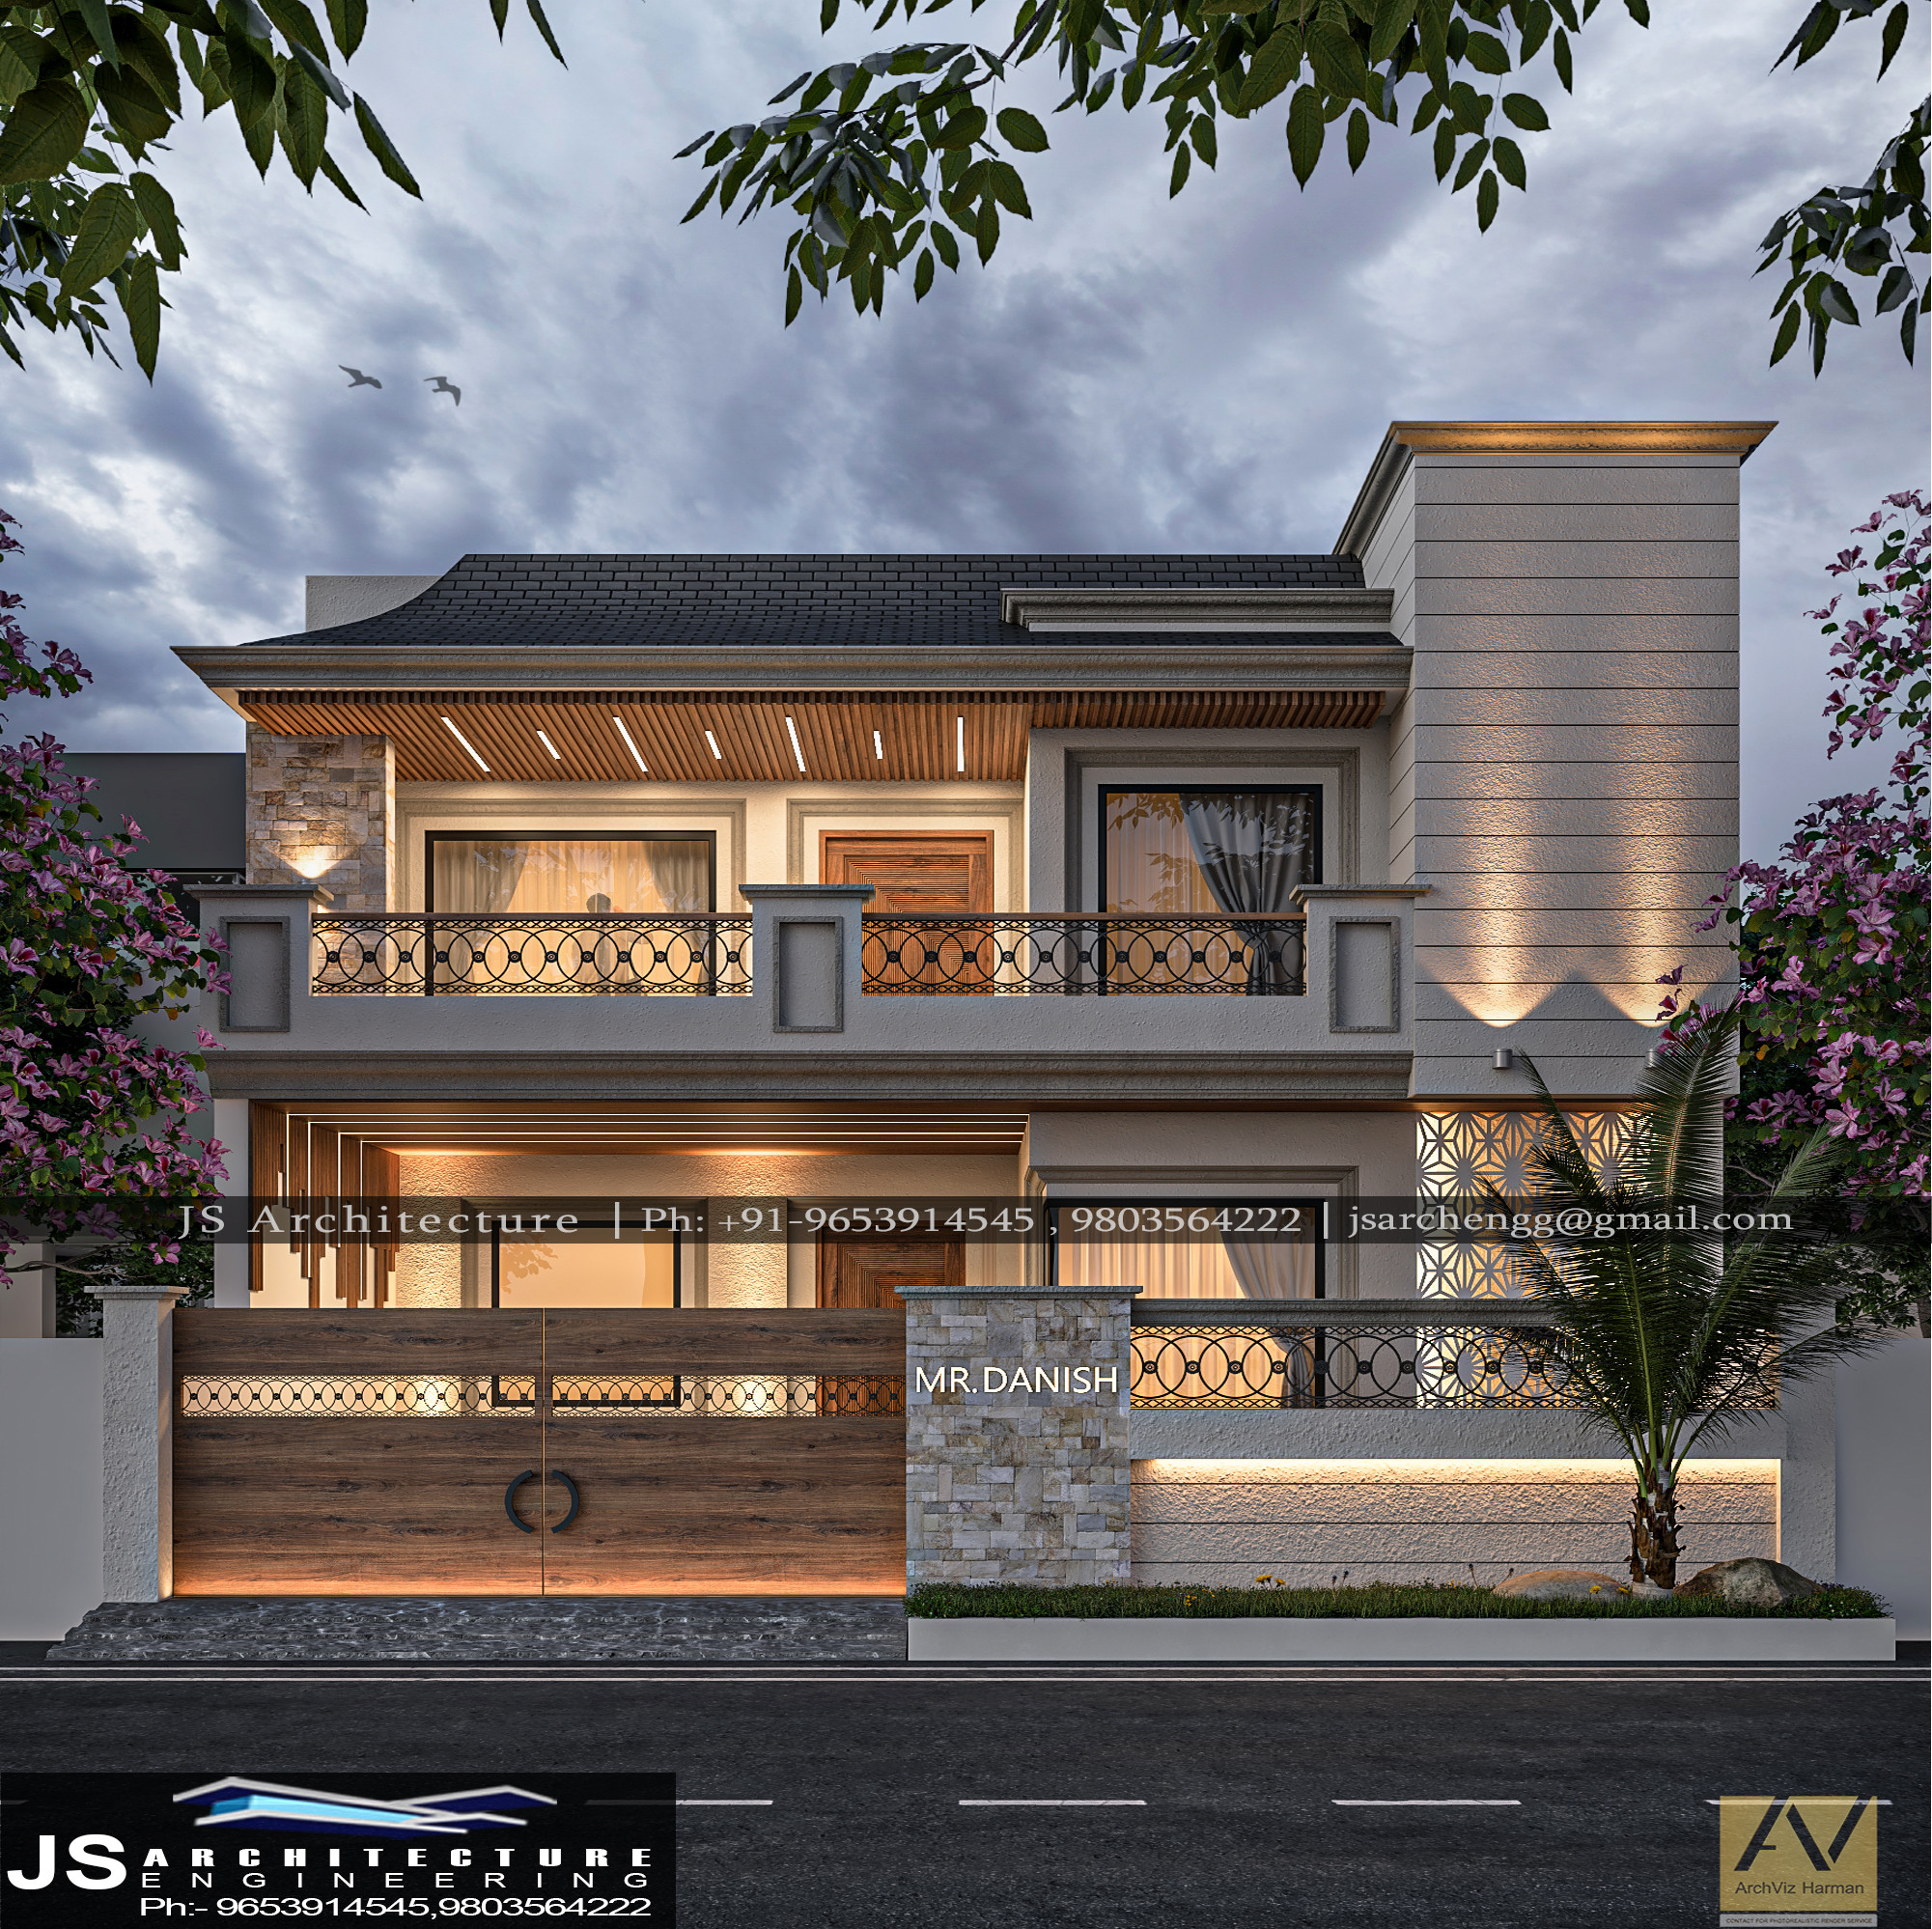 House design in INDIA  Facebook